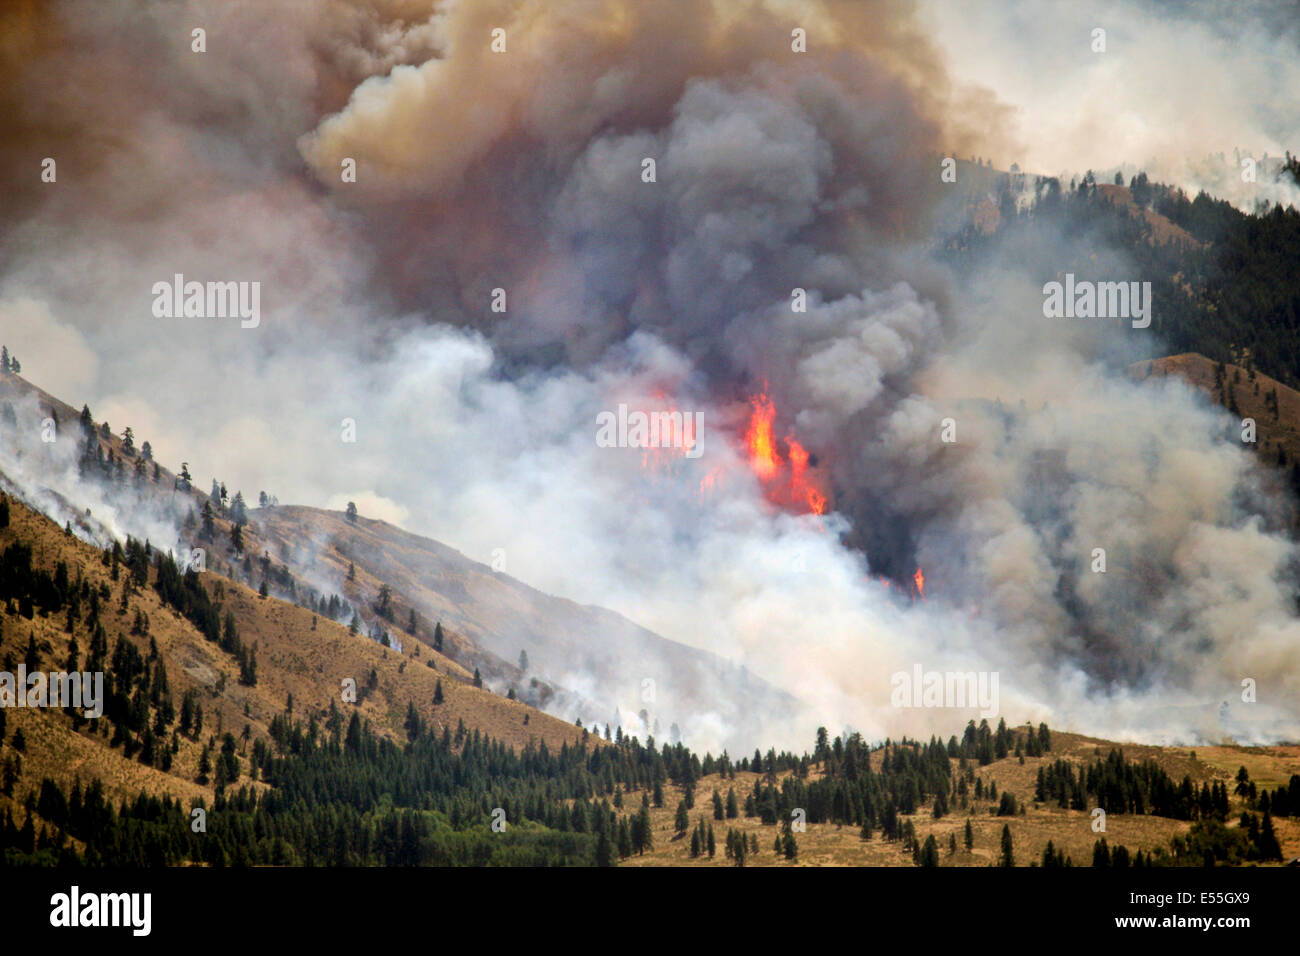 Le complexe Carlton feu brûle hors de contrôle, le 18 juillet 2014 près de Winthrop, Washington. L'incendie a détruit plus de 238 000 hectares ont brûlé et structures 150 tuant une personne. Banque D'Images